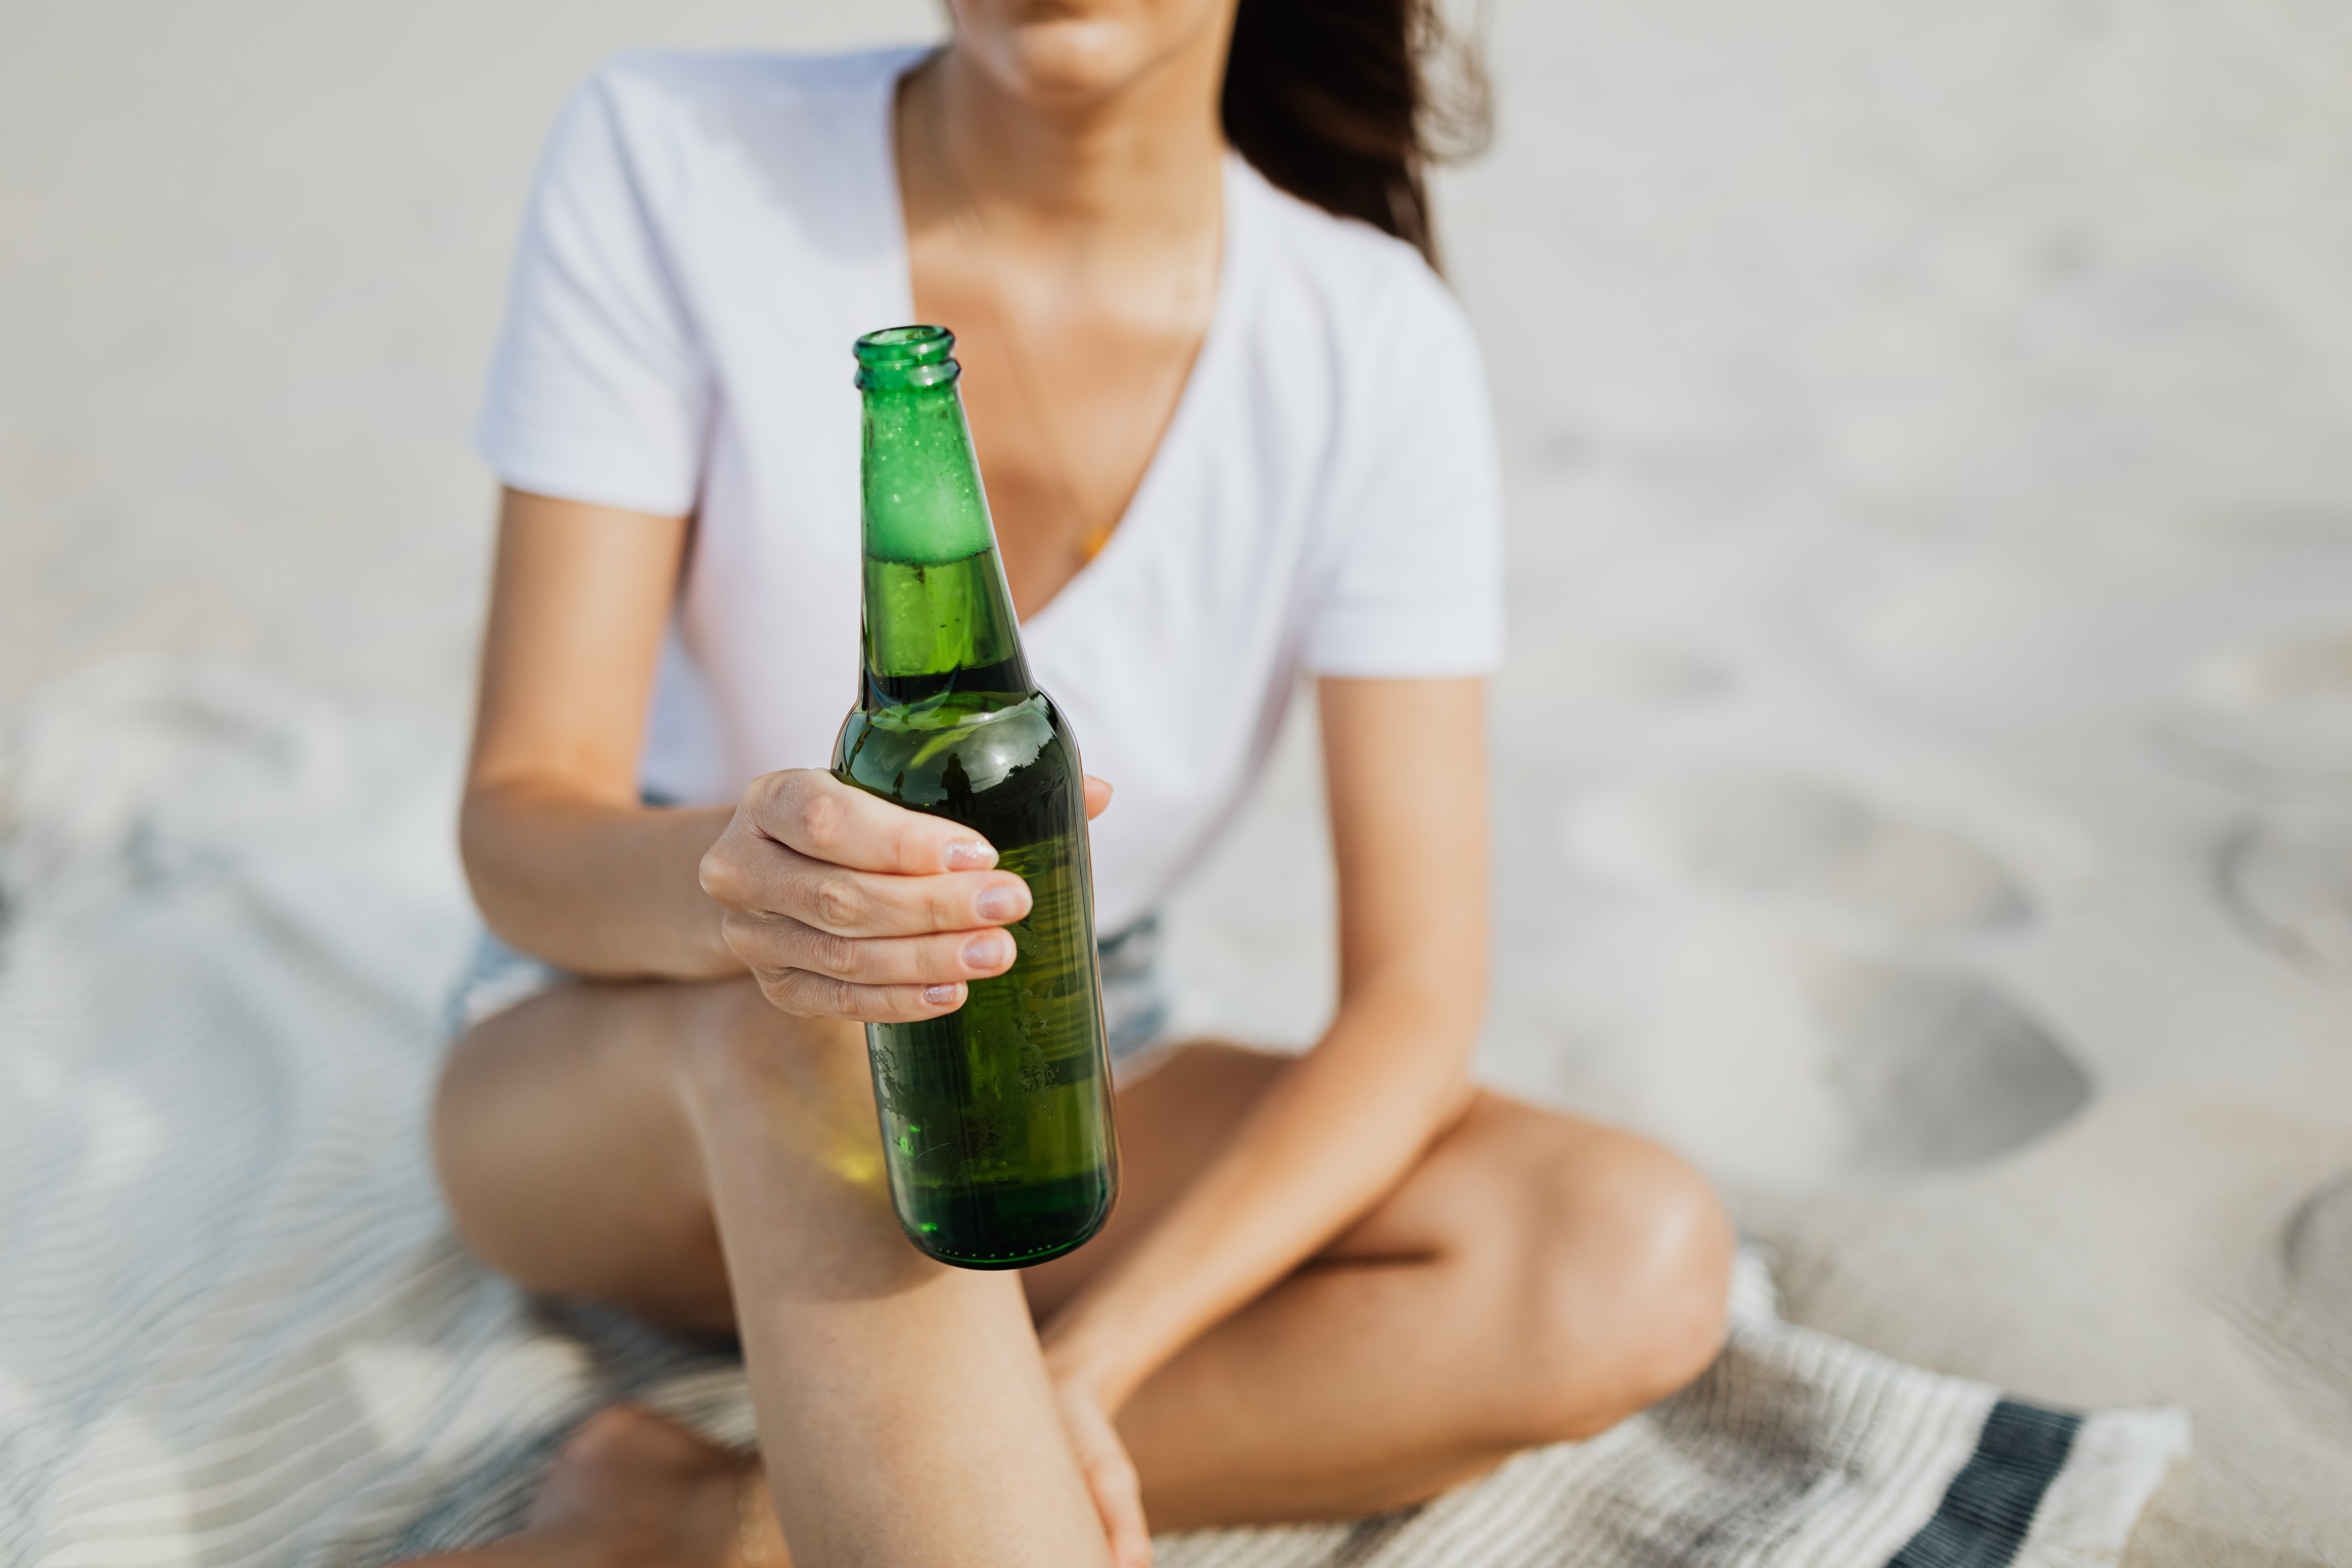 Imagem meramente ilustrativa mostra uma mulher sentada em uma toalha na praia segurando uma cerveja.